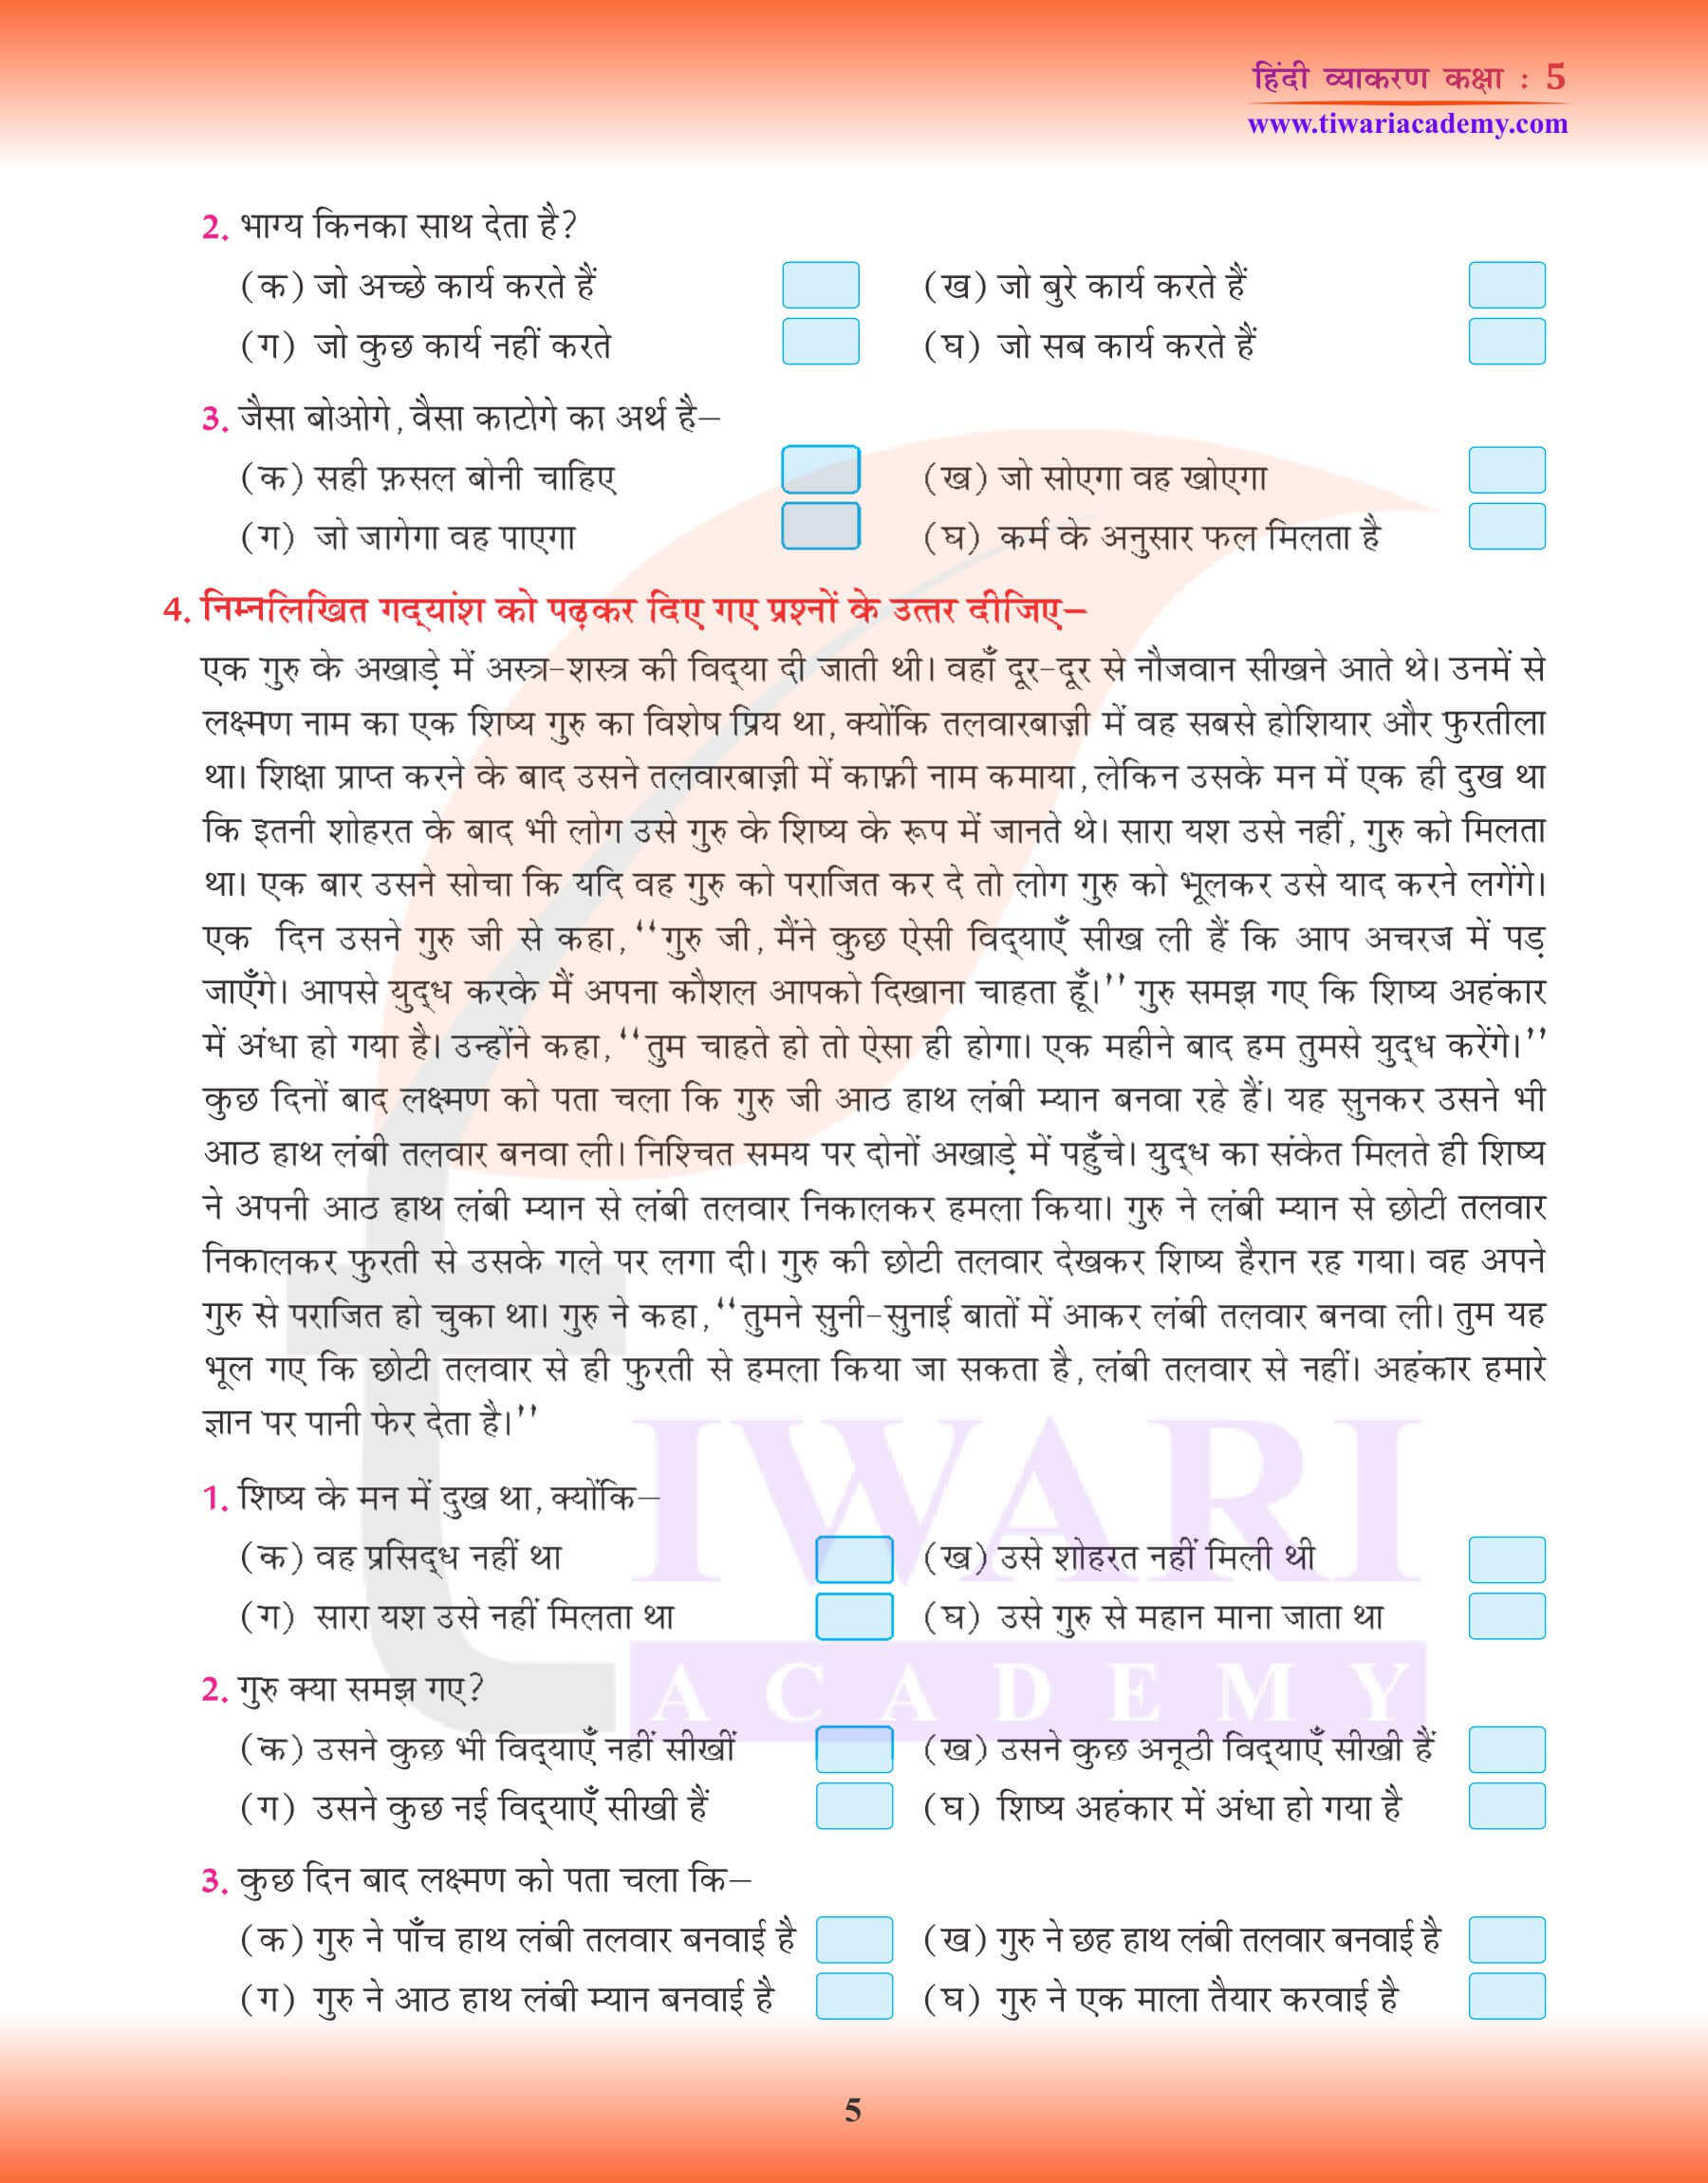 कक्षा 5 हिंदी व्याकरण में अपठित गद्यांश अभ्यास